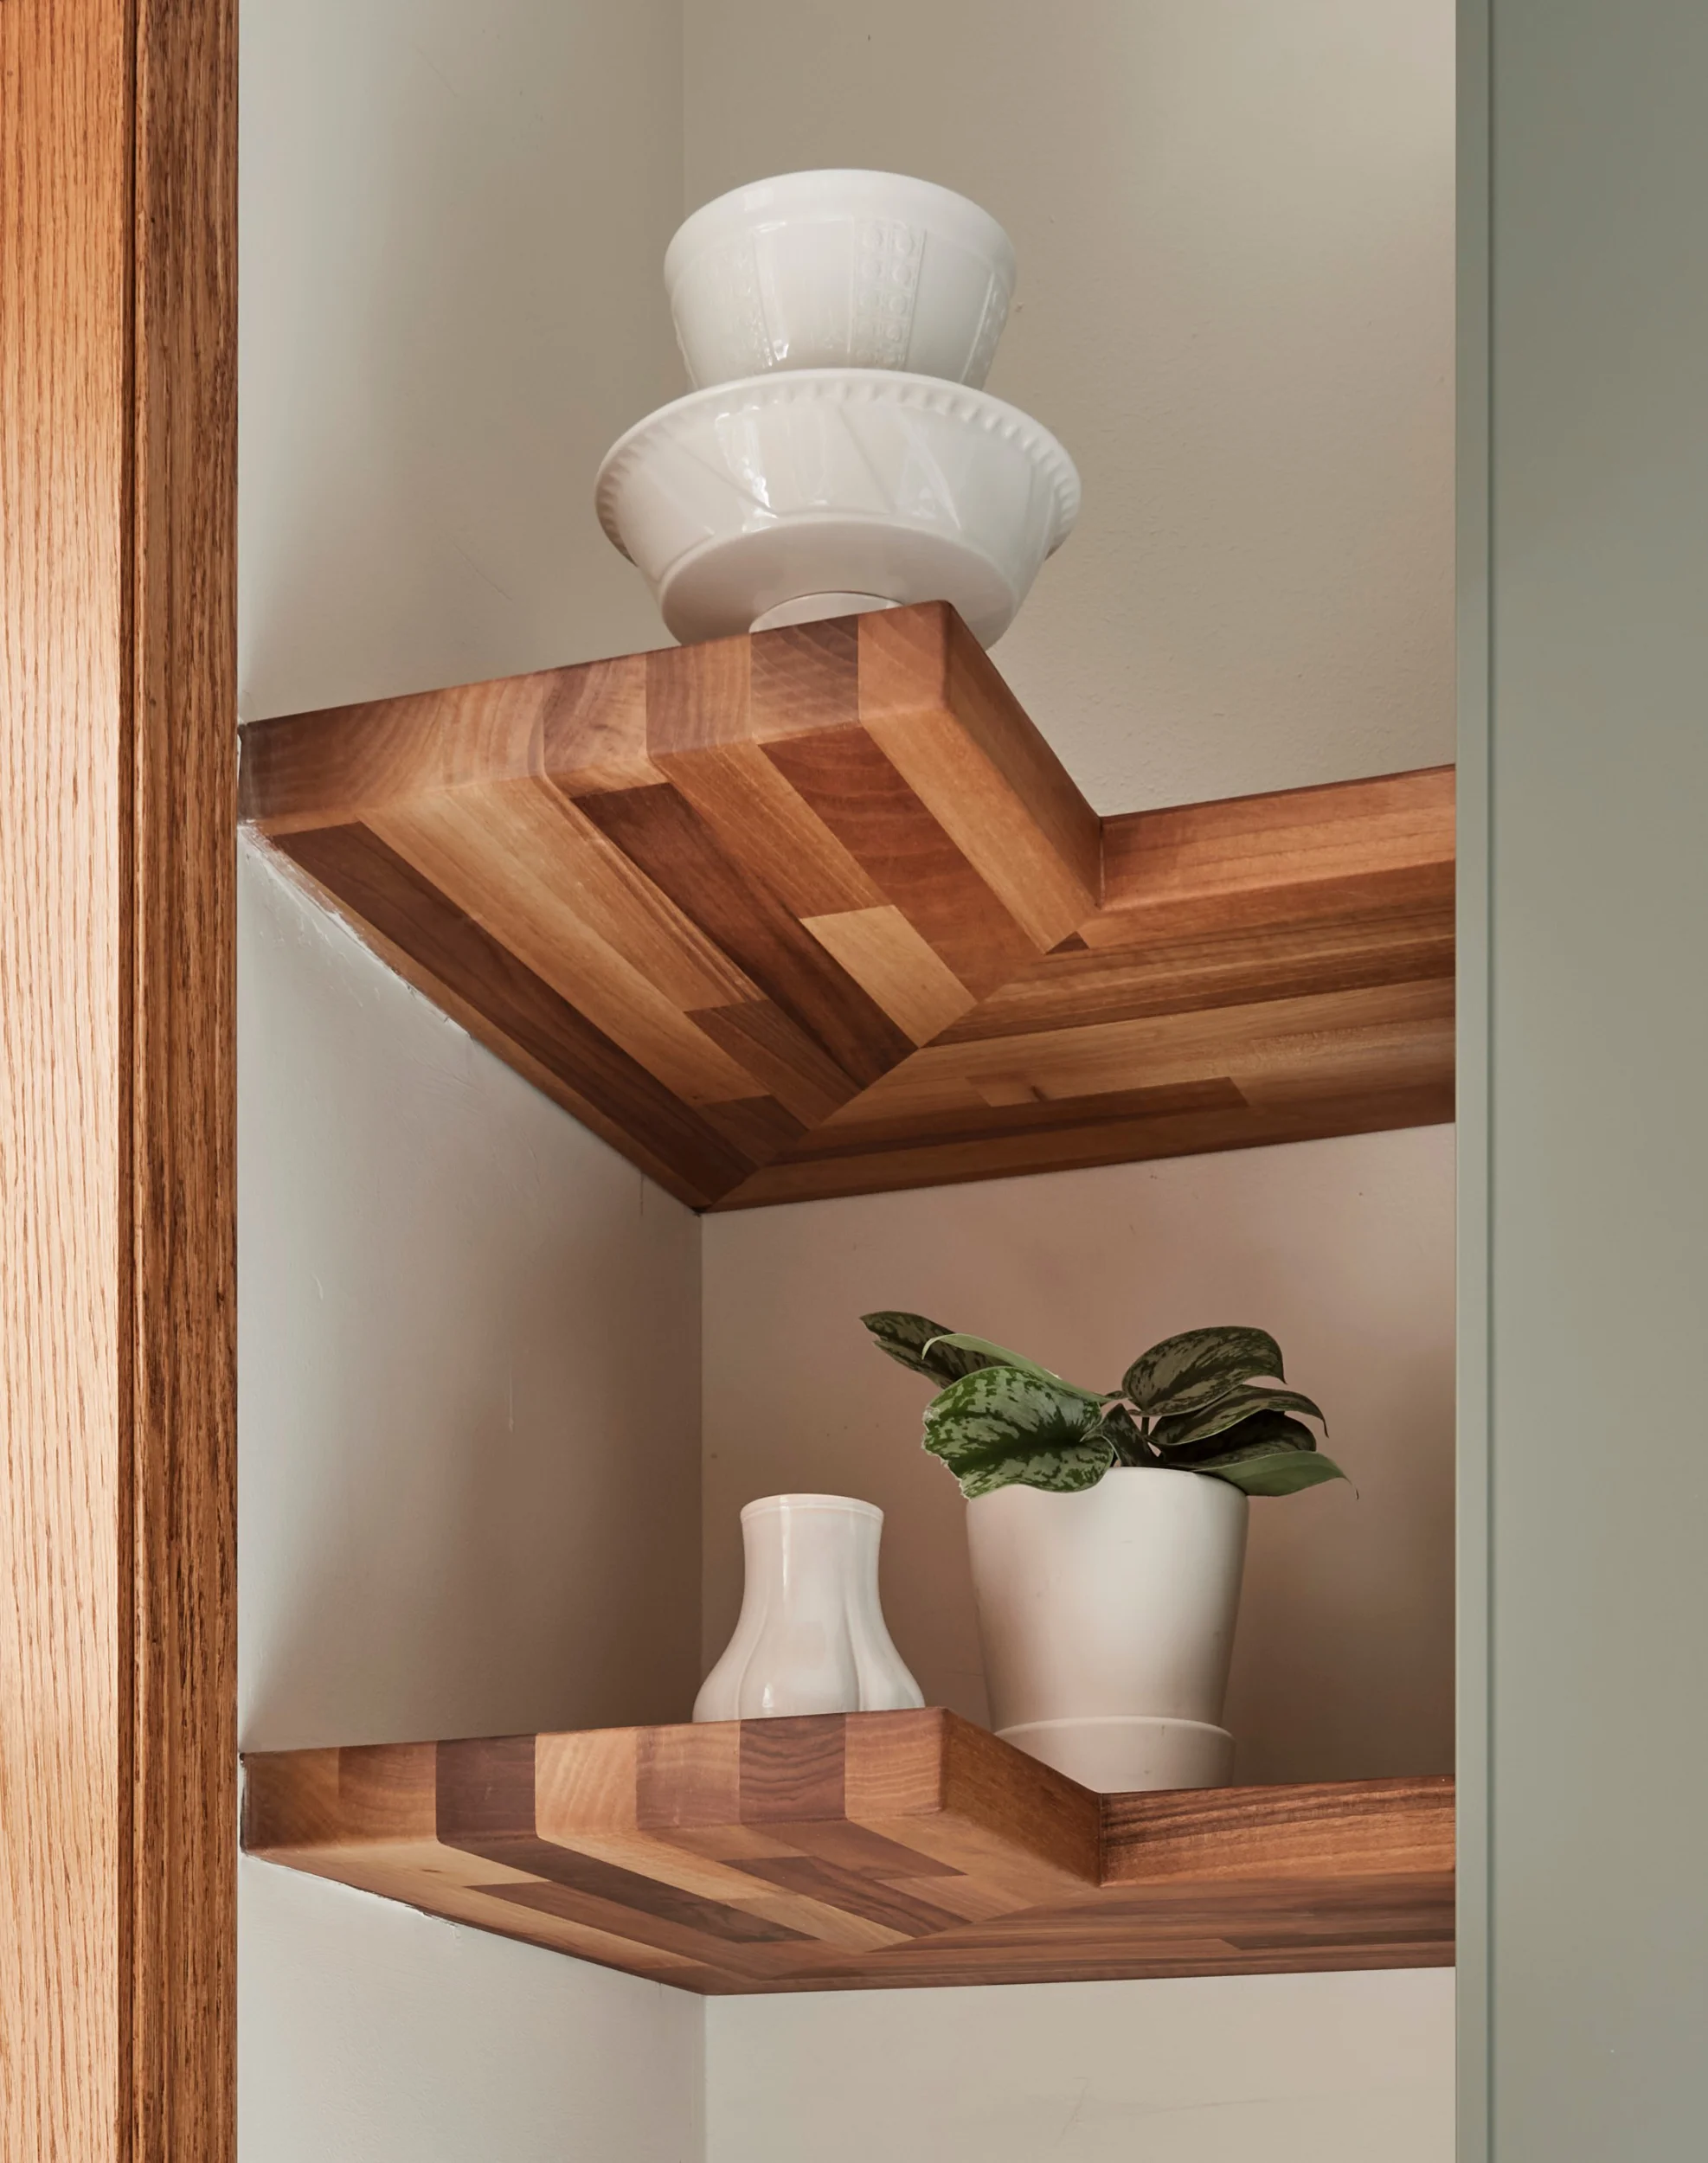 Custom wooden shelves